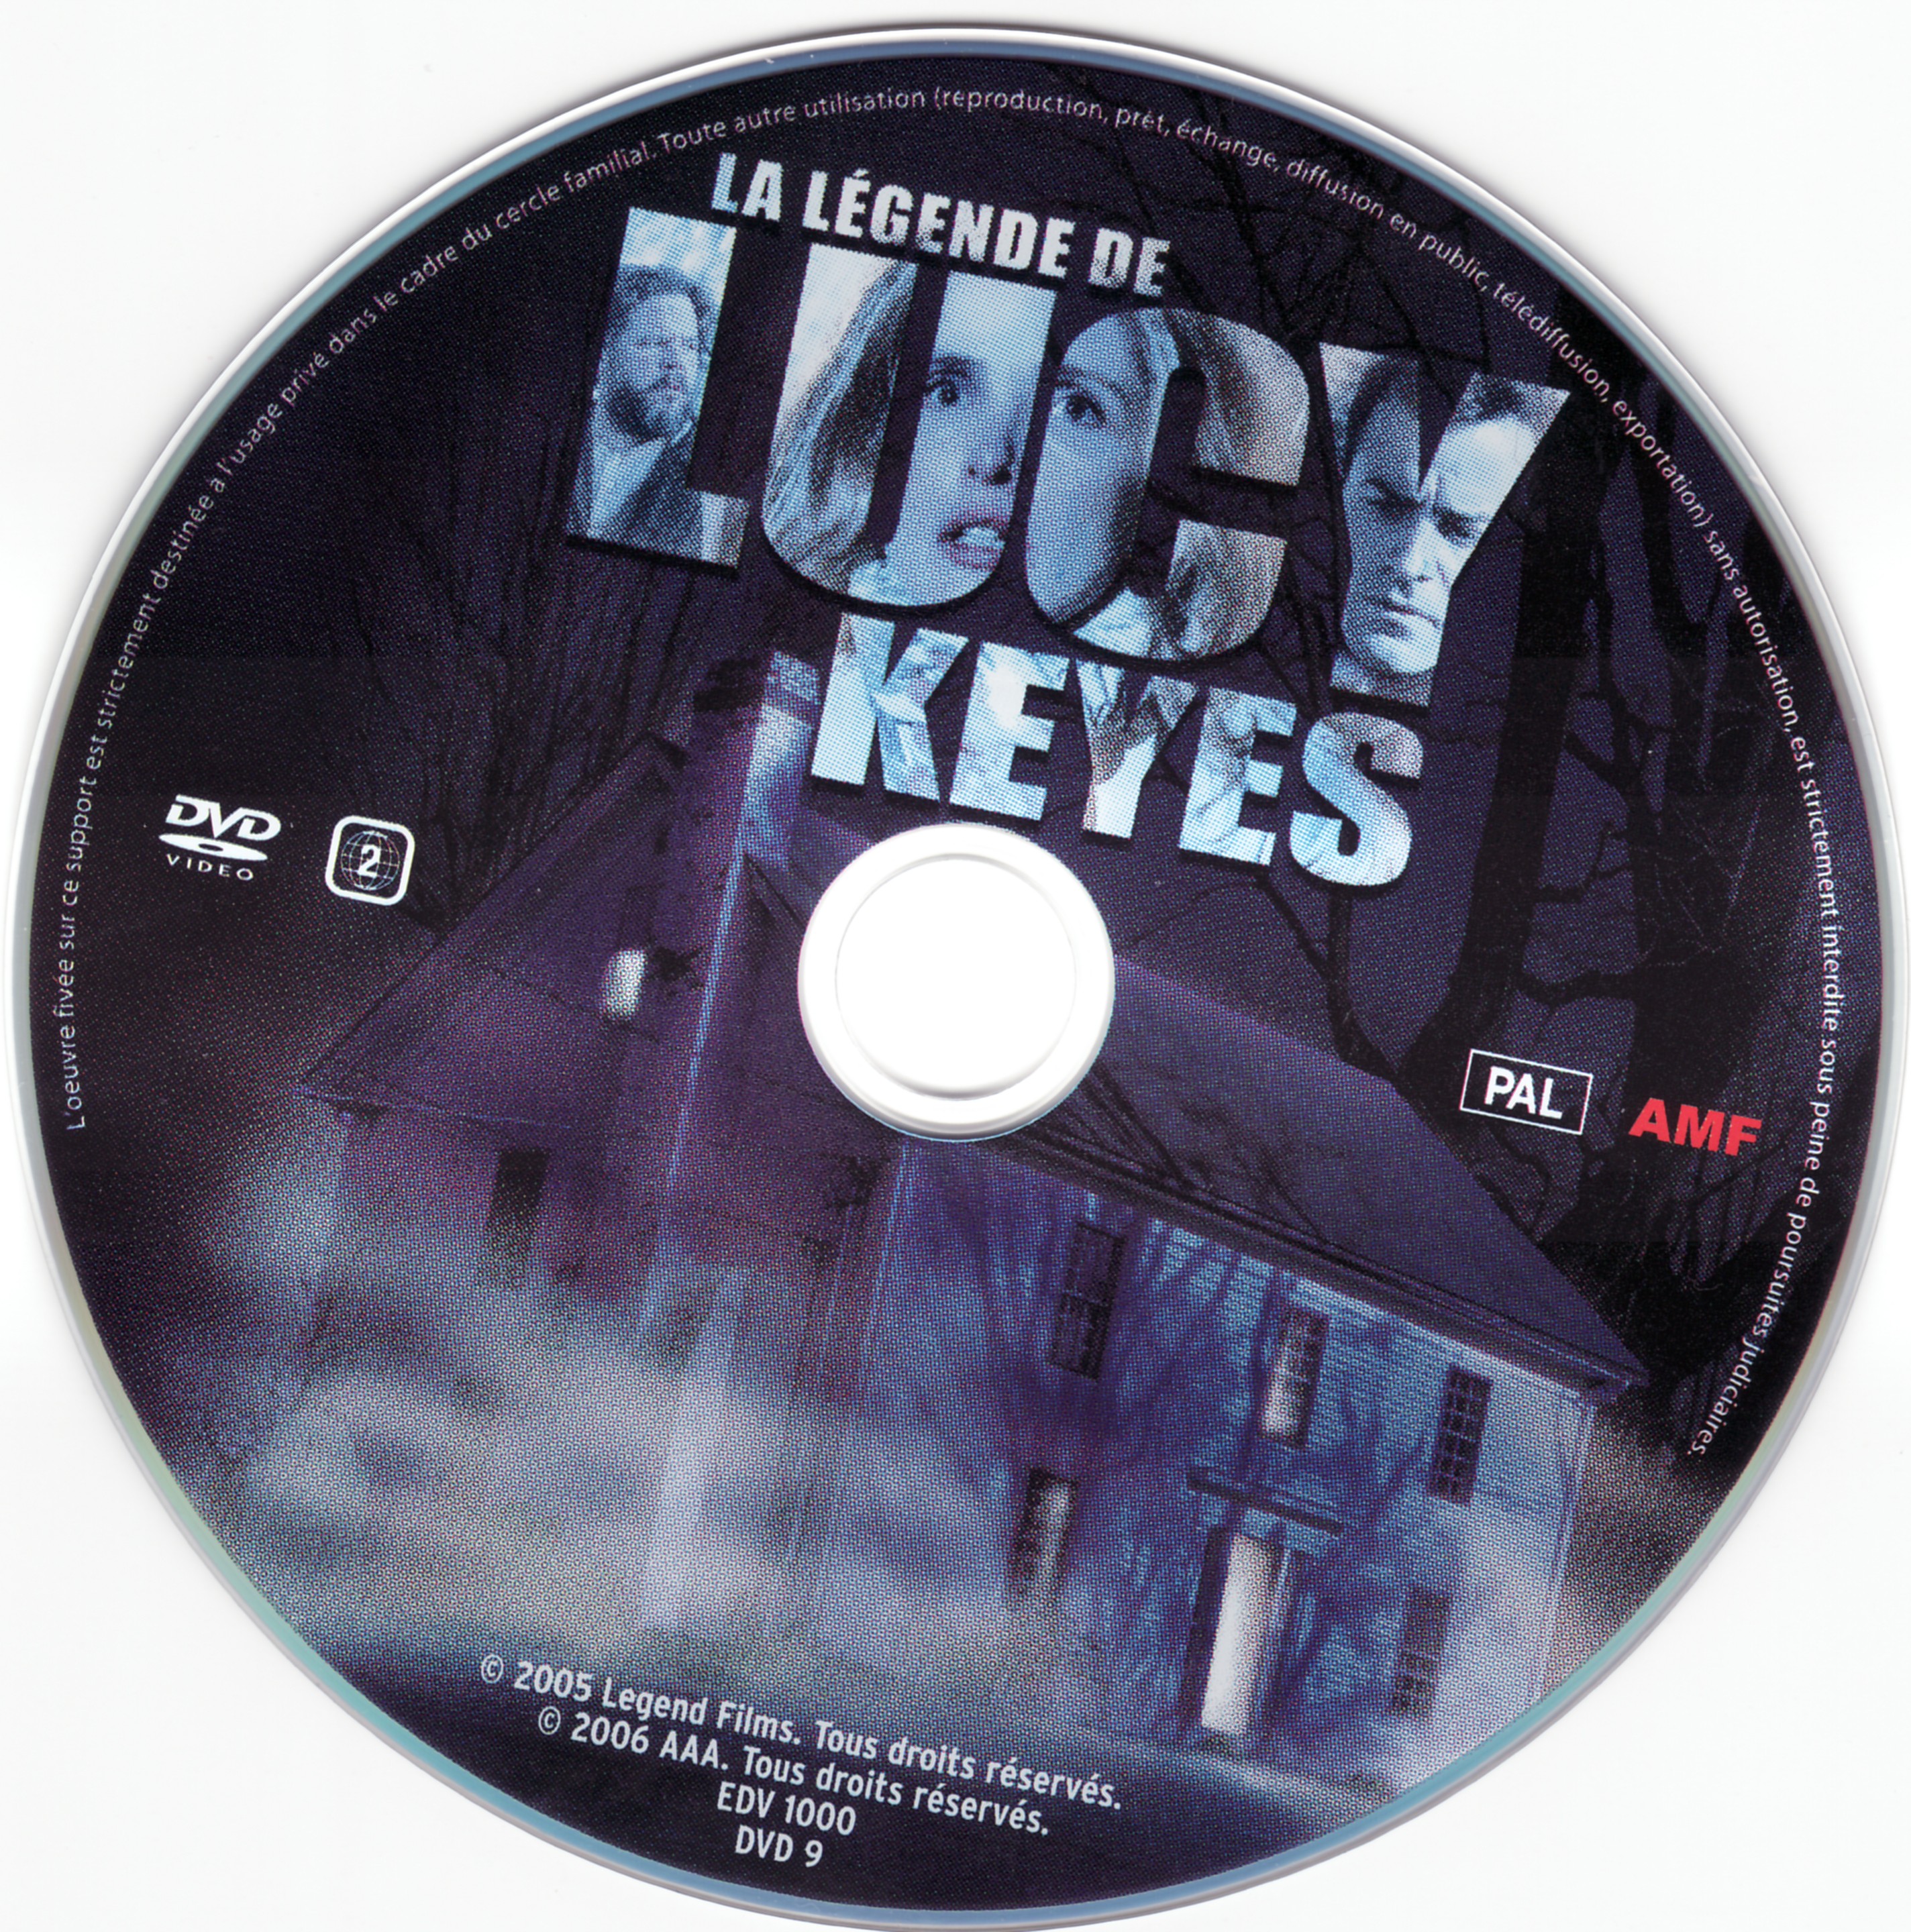 La legende de Lucy Keyes